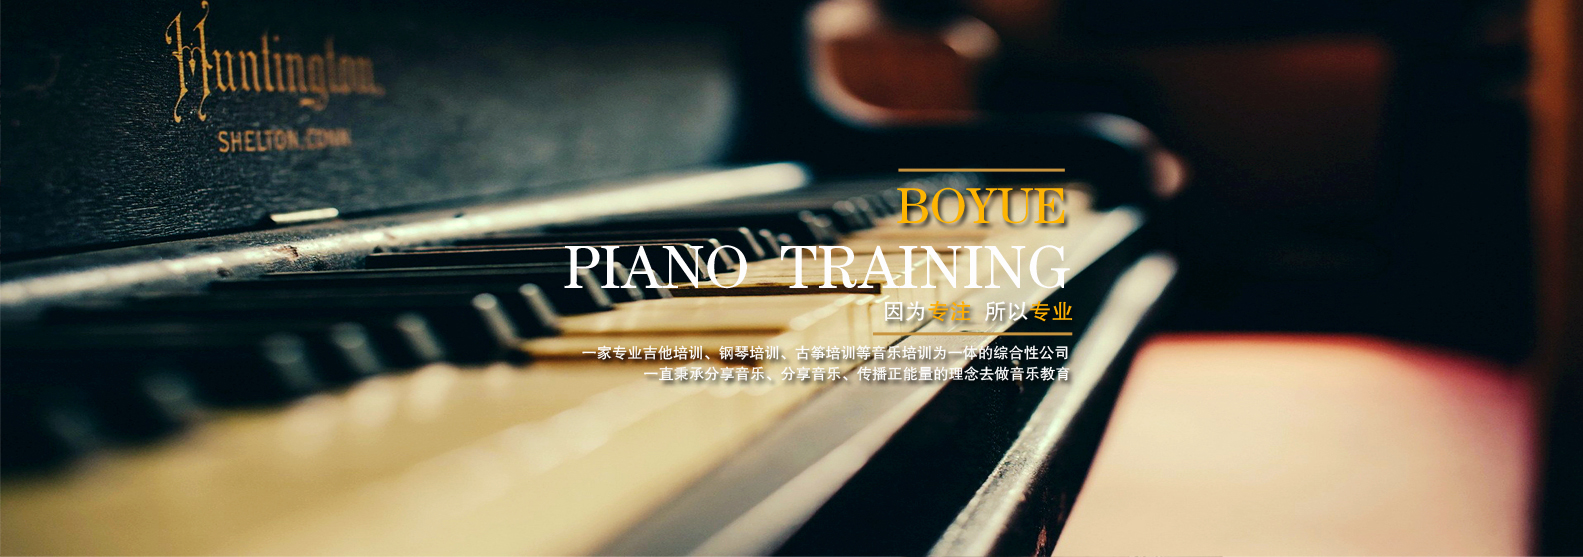 西安学钢琴,不仅仅是学那么简单